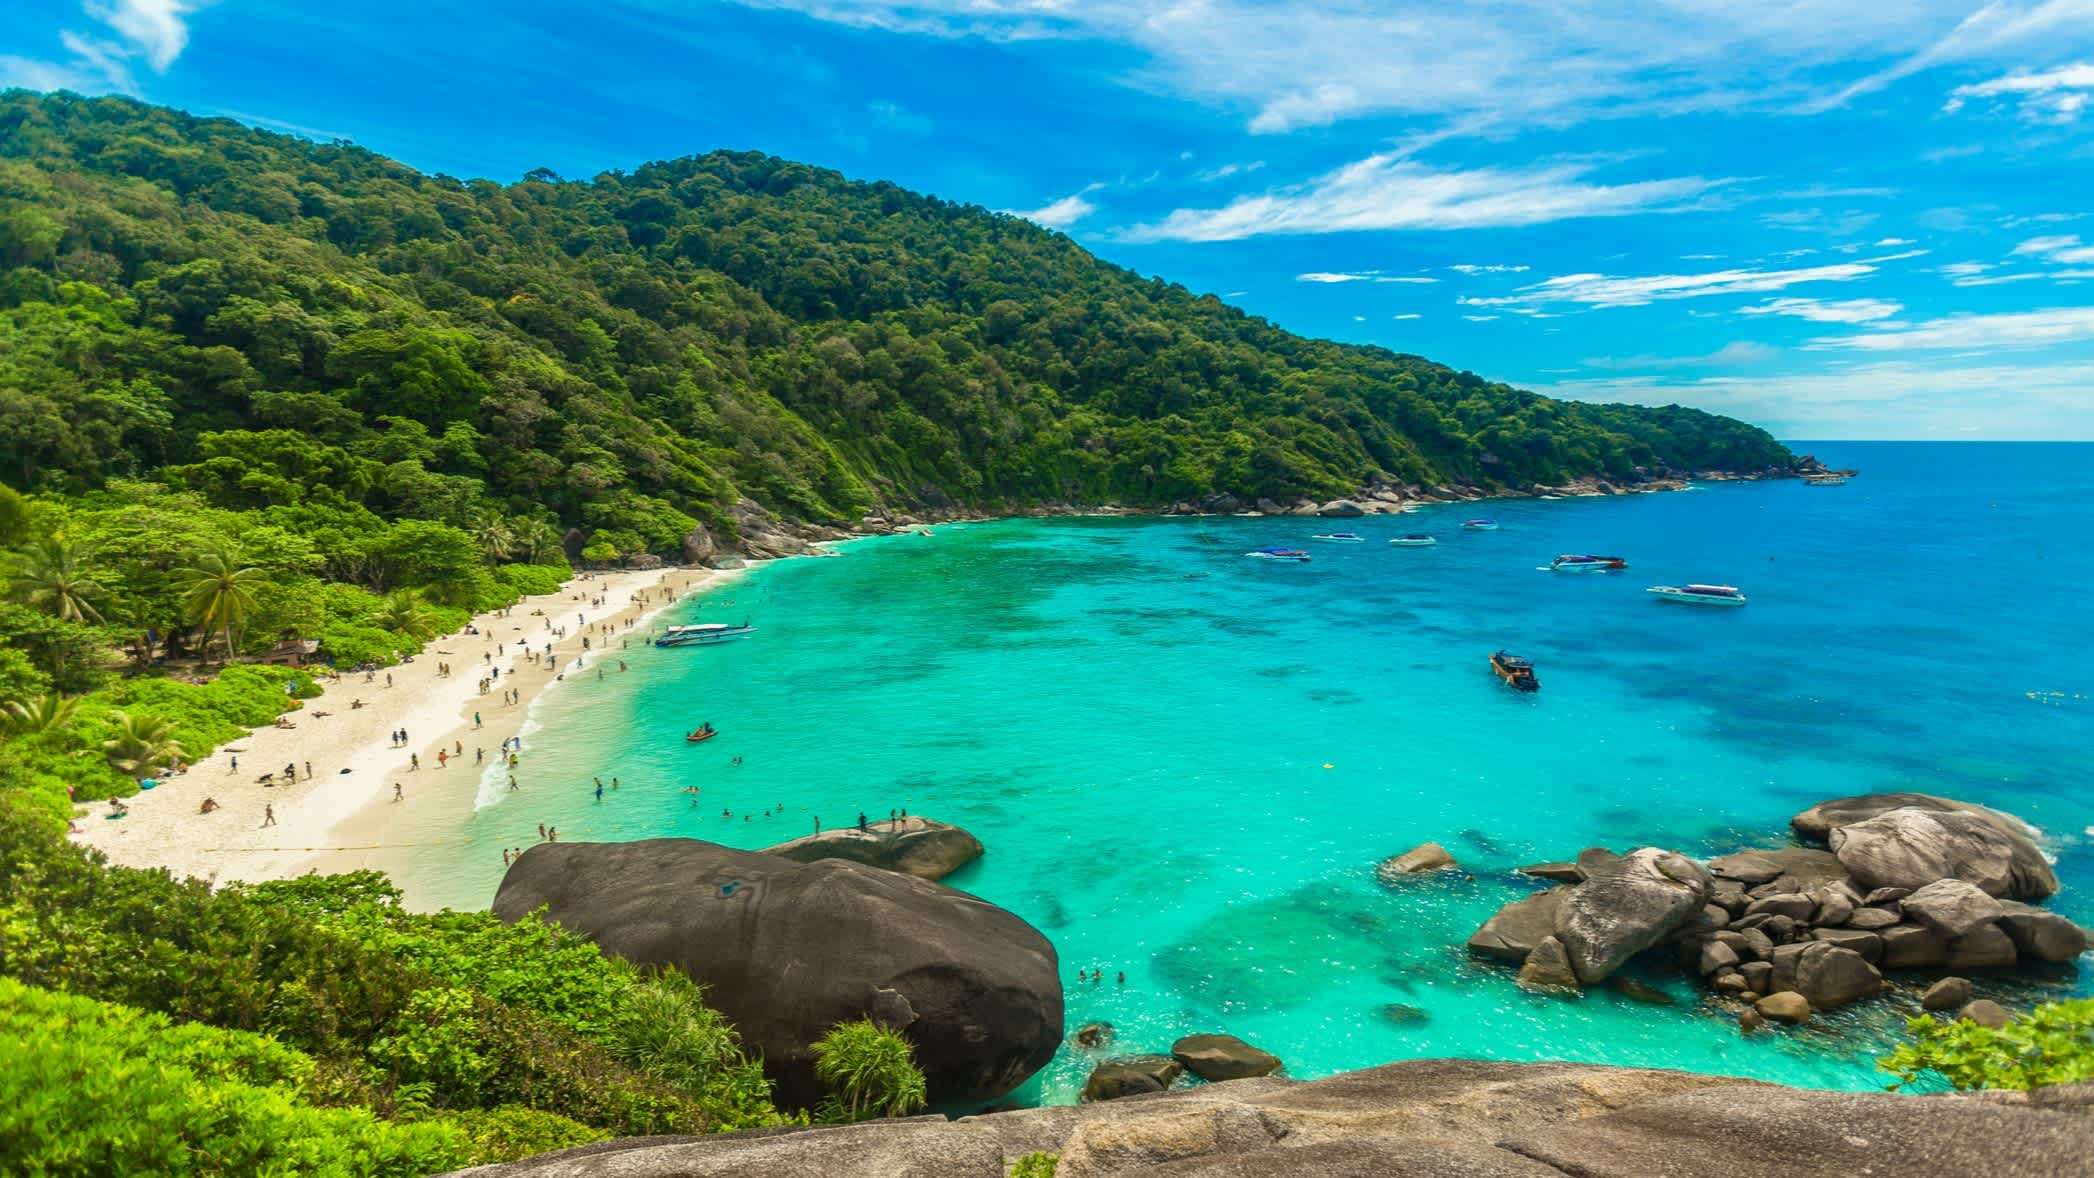 Blick auf eine Bucht auf Phuket, Thailand, mit türkisblauem Wasser, Sandstrand und saftiggrünen Hügeln.